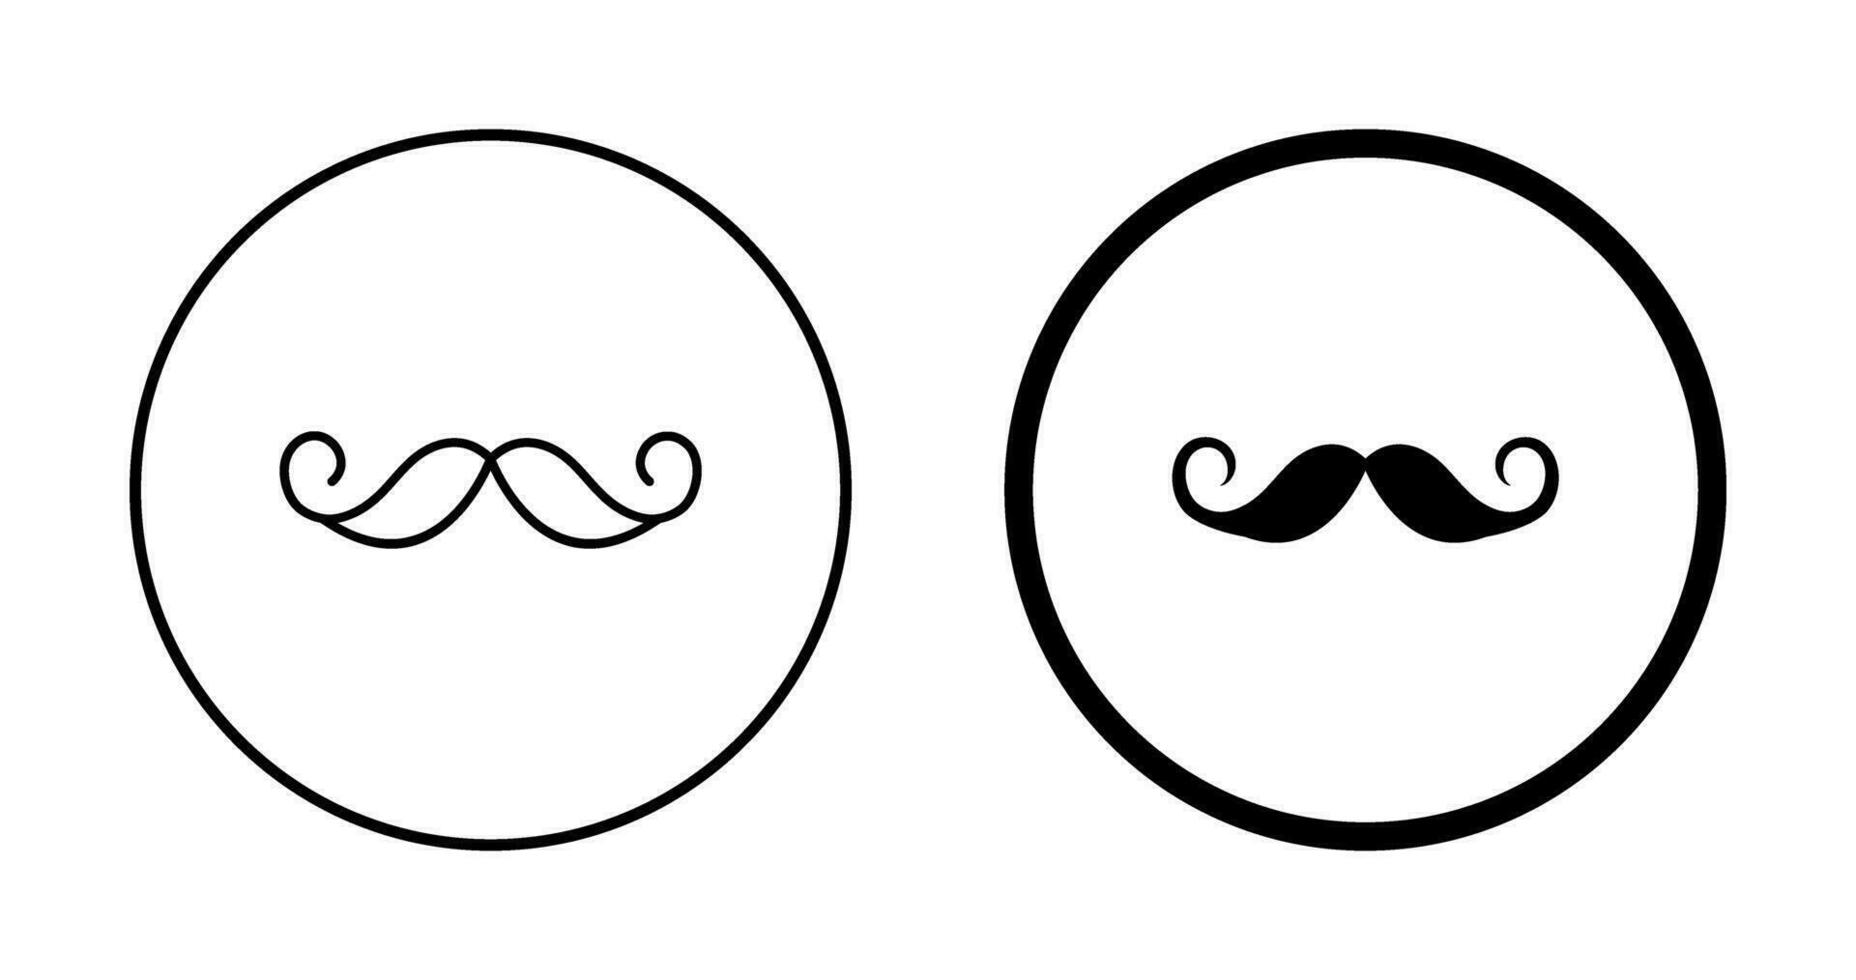 icono de vector de bigote